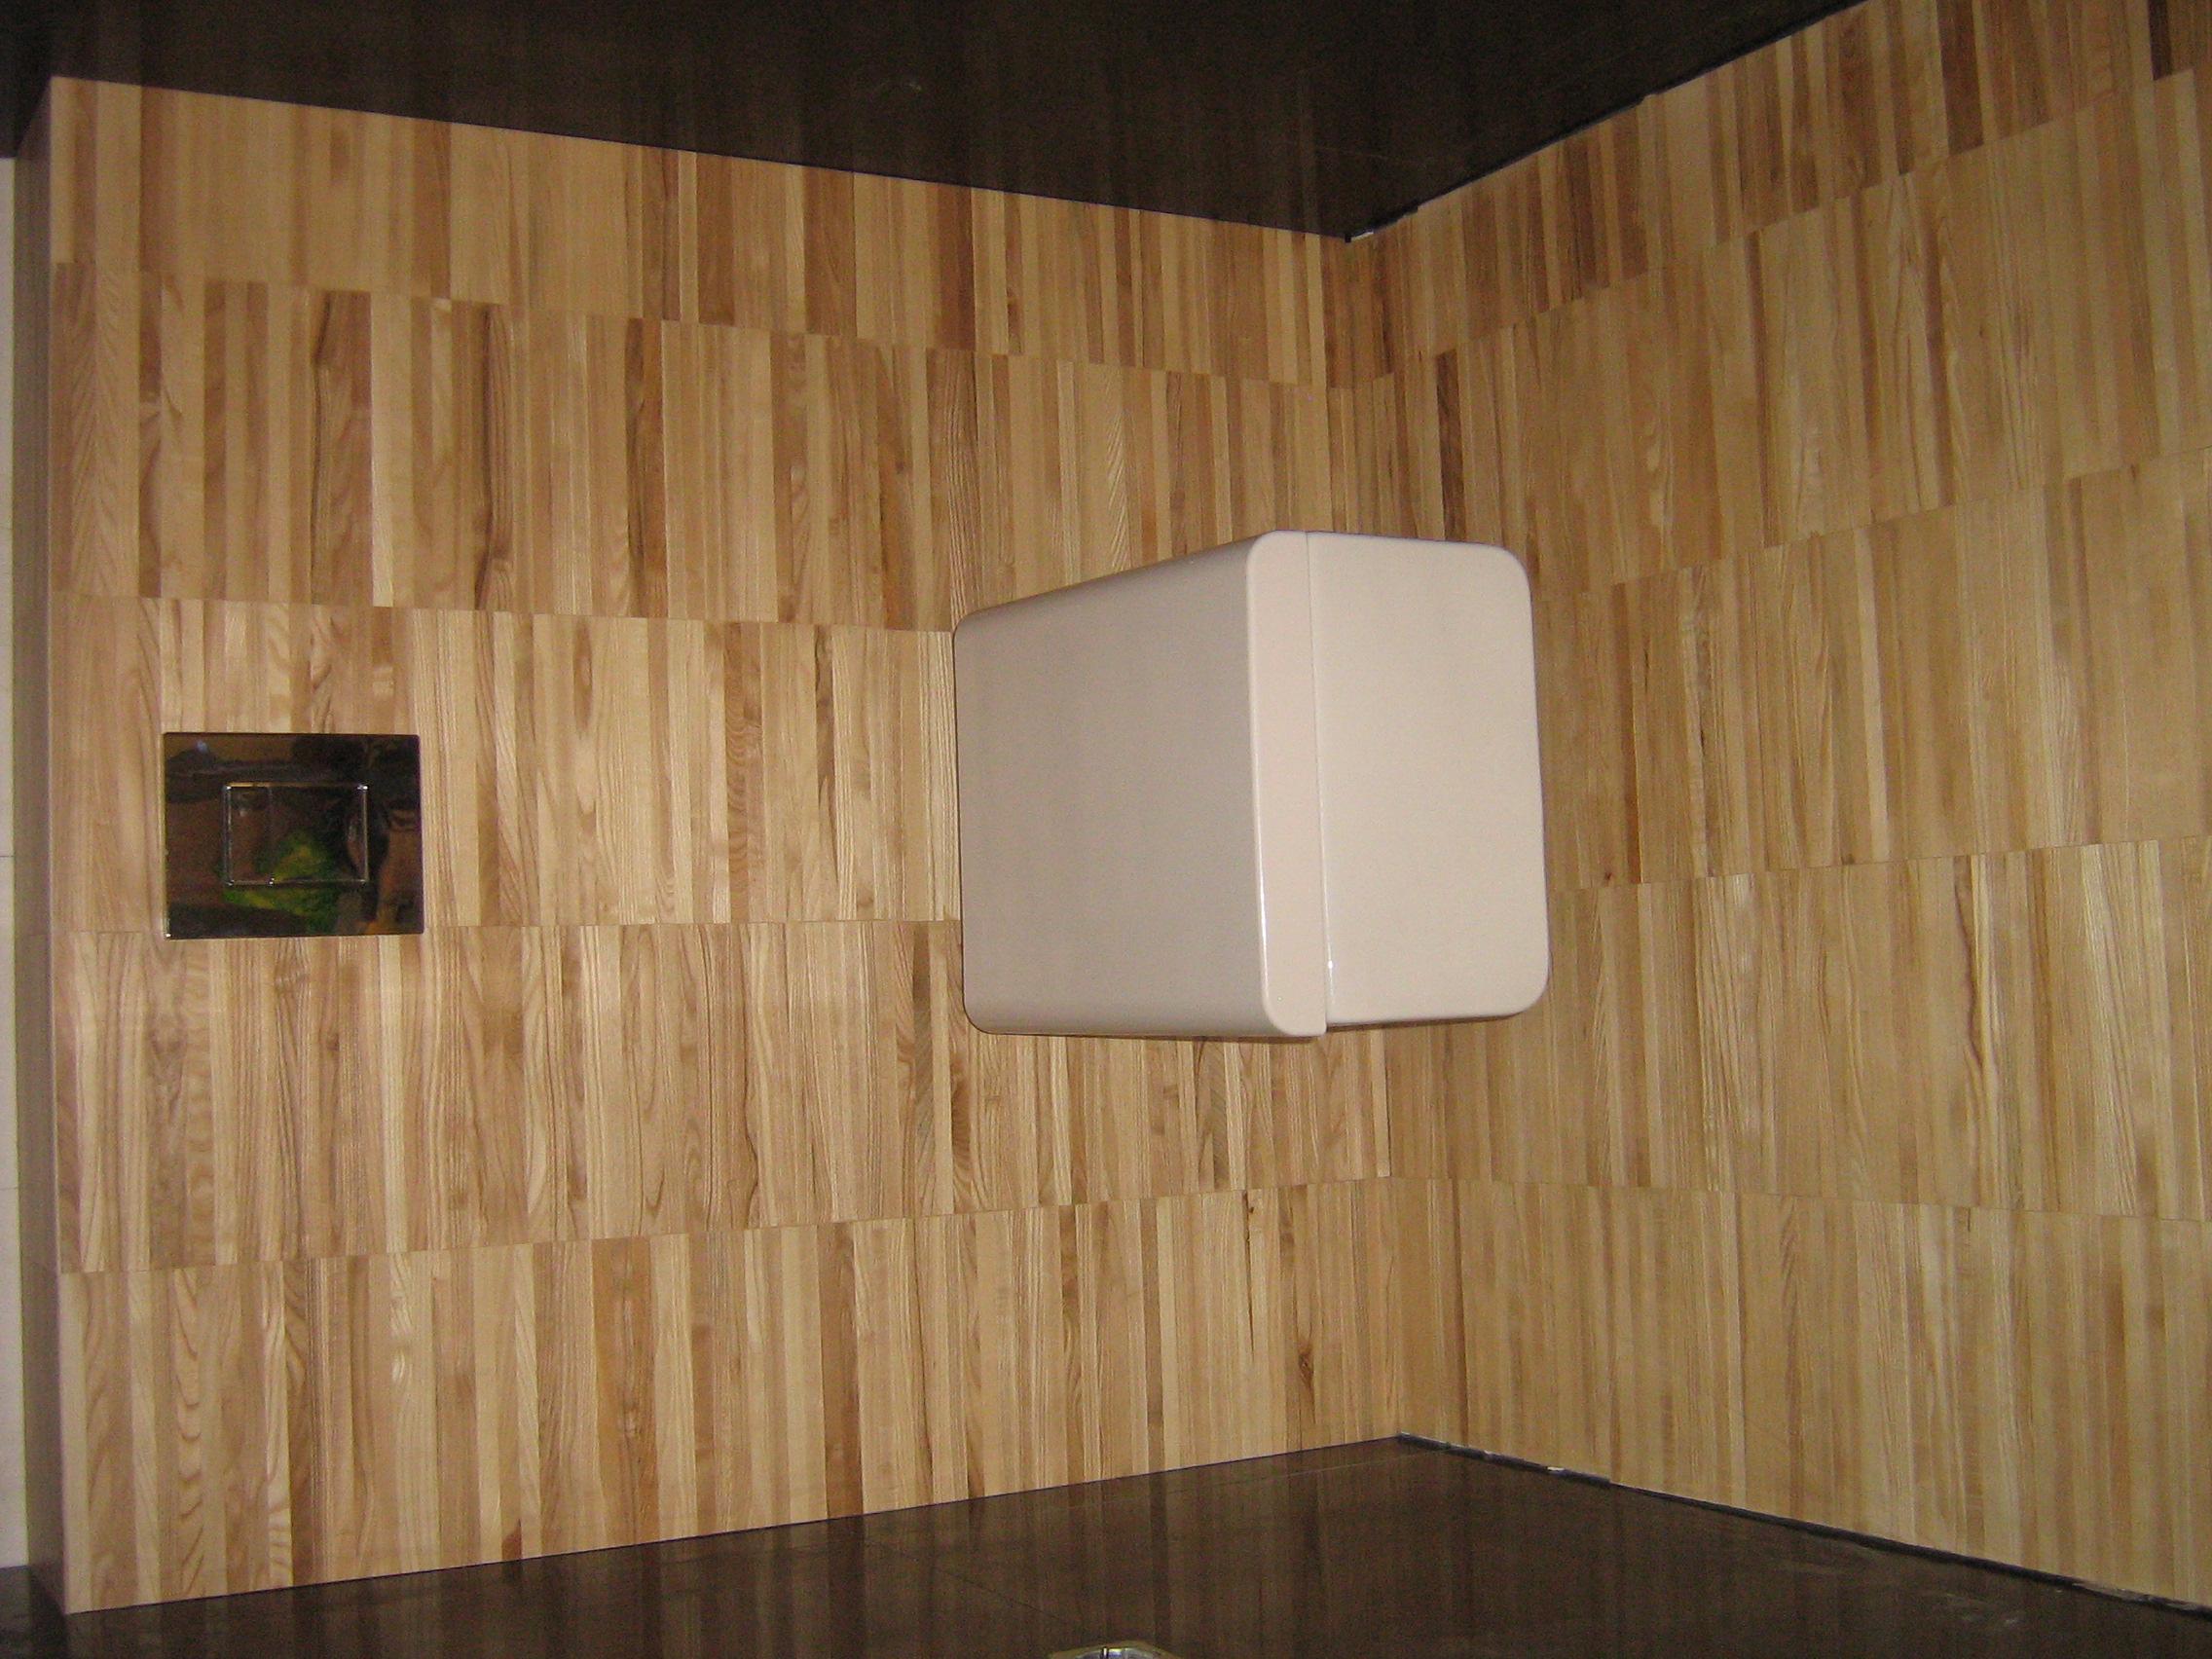 Przykładowa łazienka wykonana przez firmę Parkietnet1